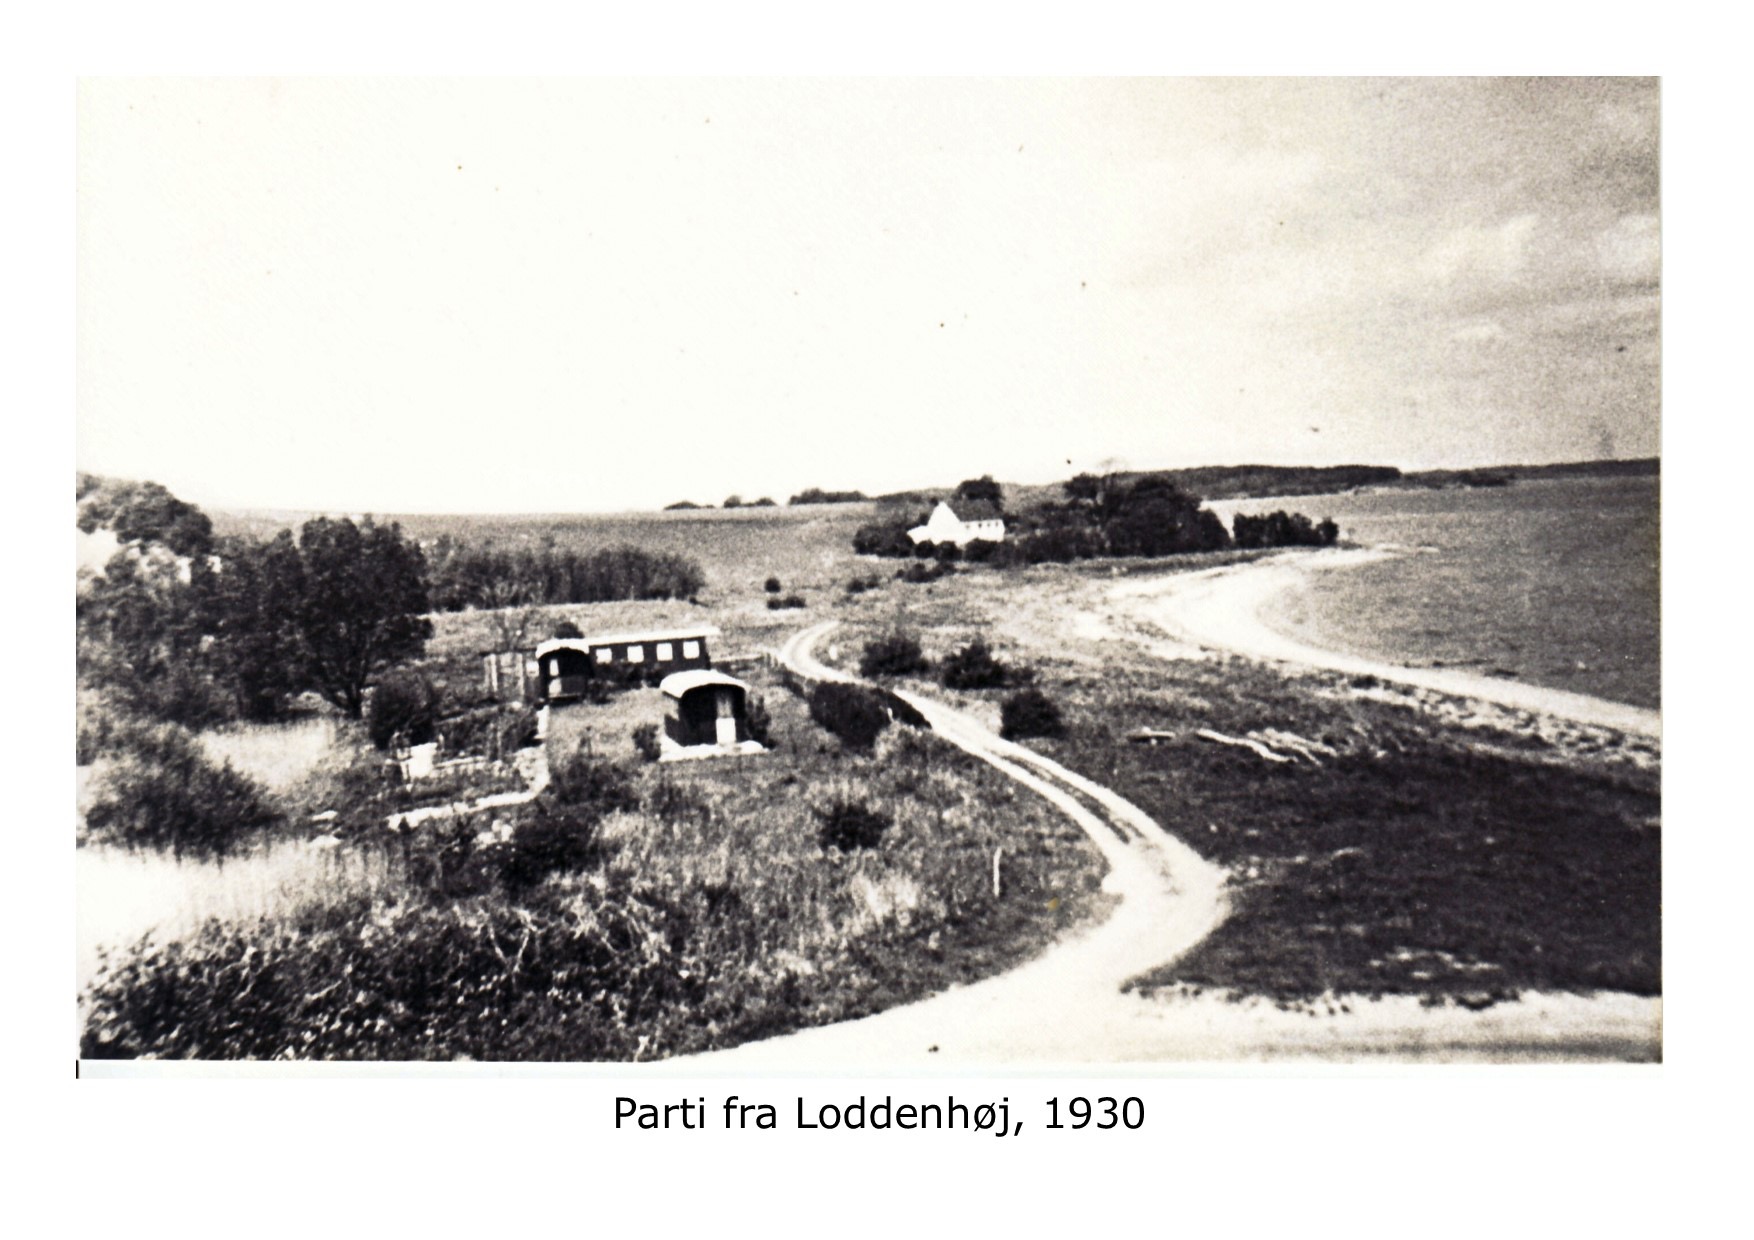 Parti fra Loddenhøj 1930 